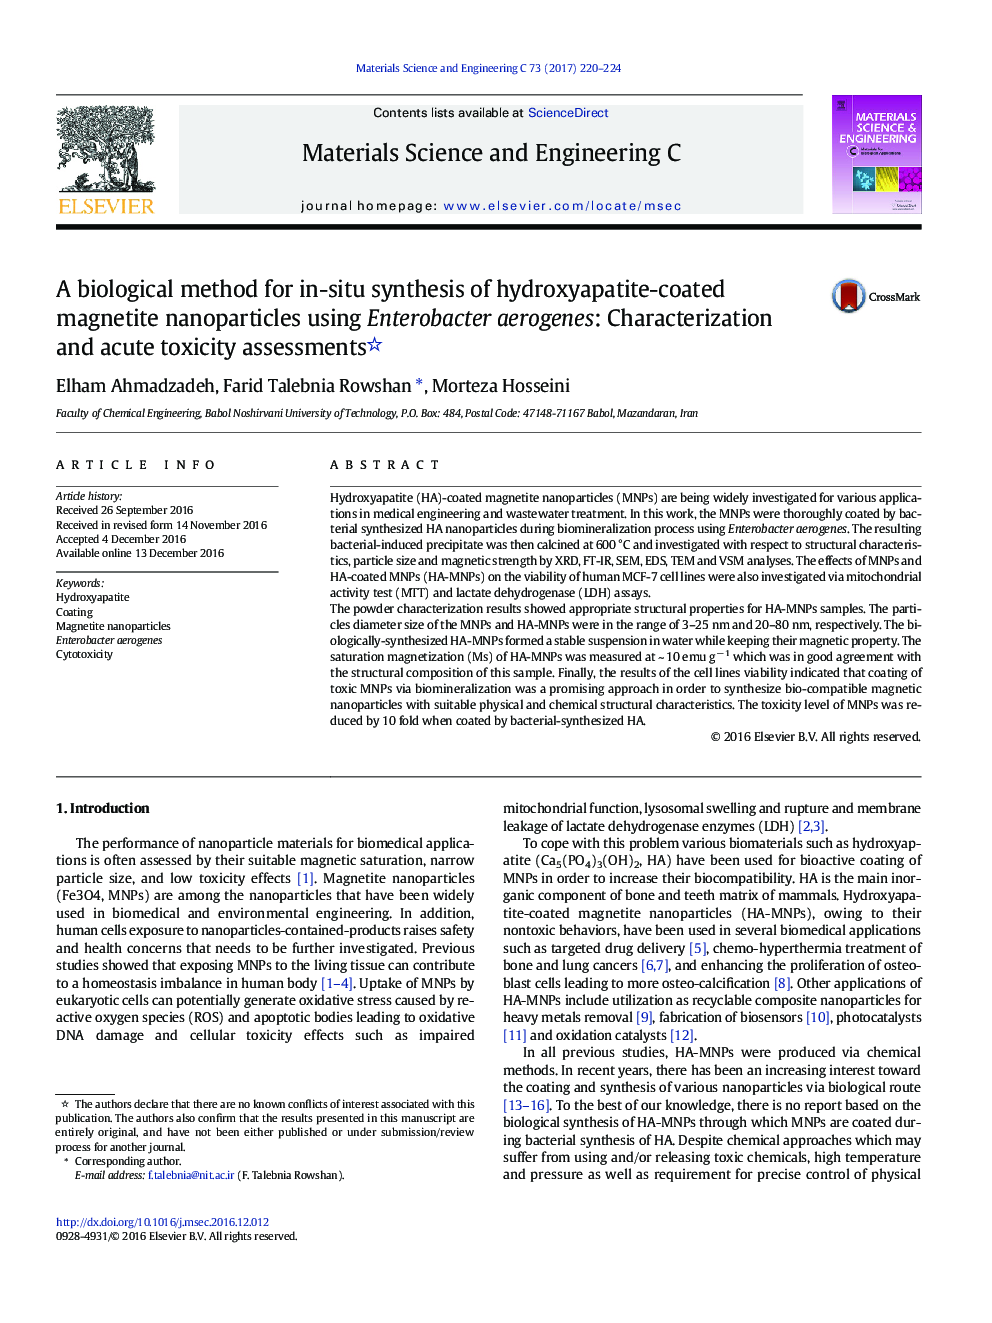 یک روش بیولوژیک برای سنتز موضعی نانوذرات مغناطیسی پوشش داده شده با هیدروکسی آپاتیت با استفاده از Enterobacter aerogenes: ارزیابی و ارزیابی سمیت حاد